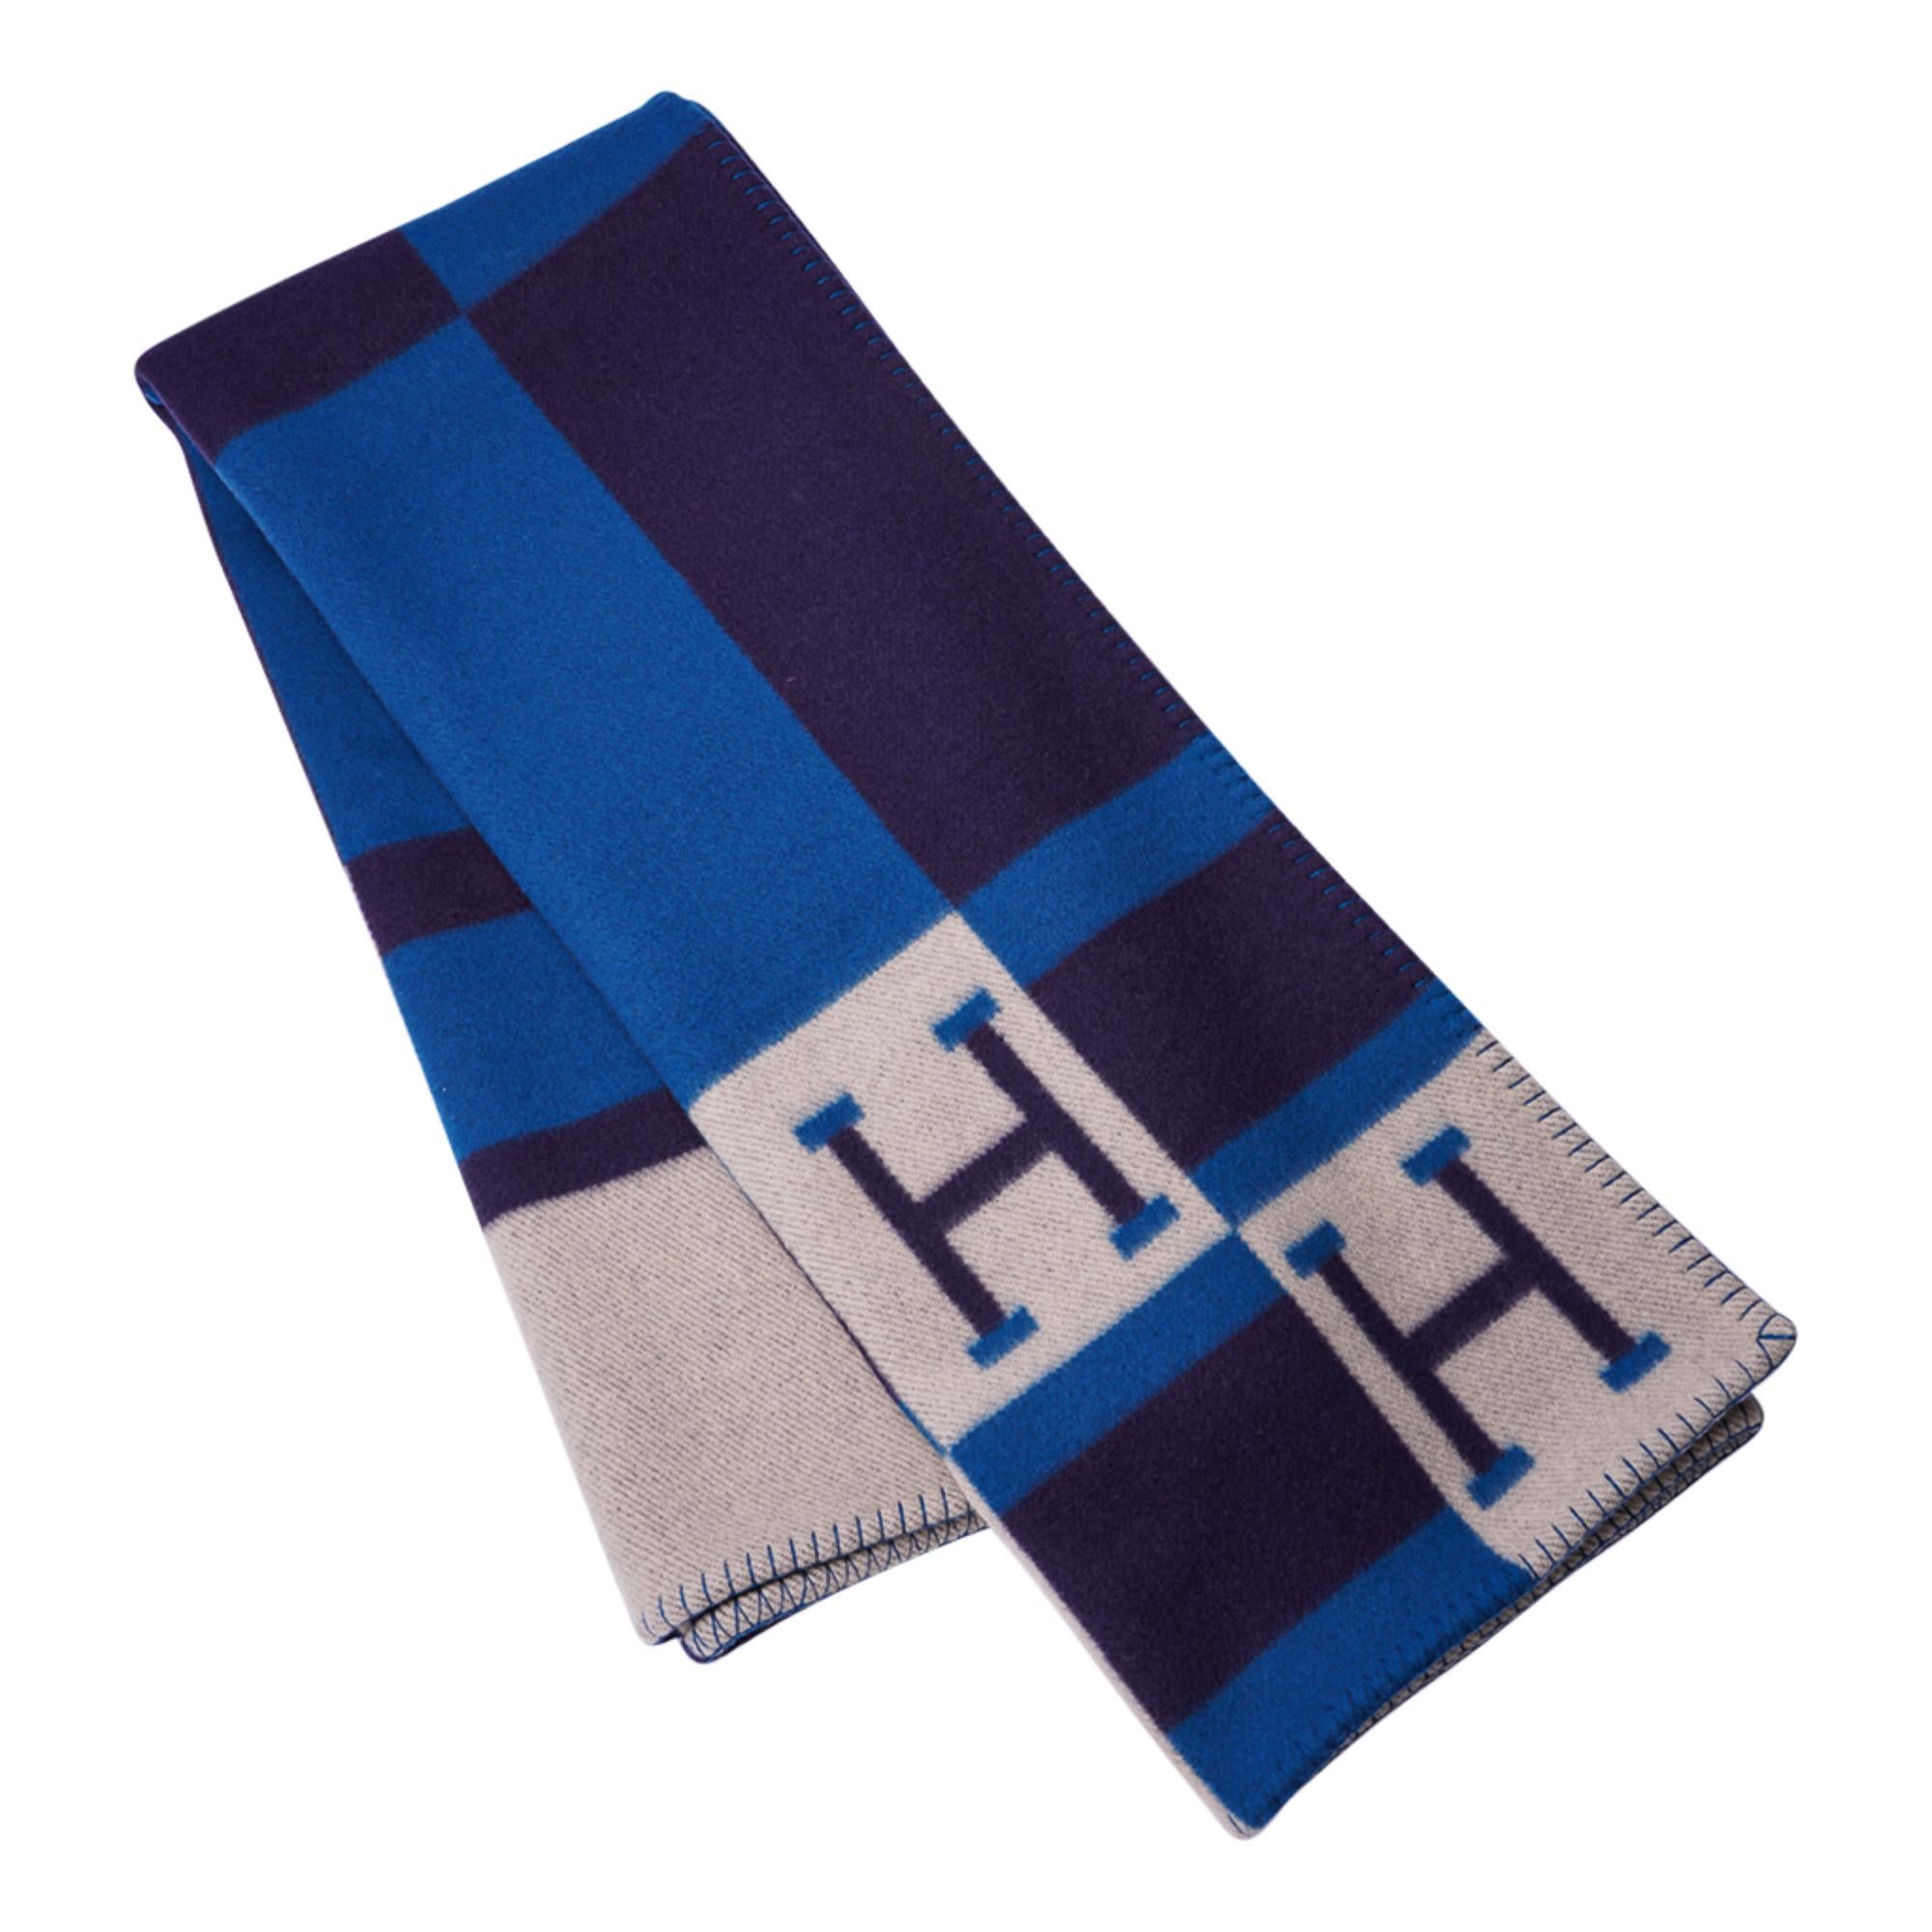 Mightychic bietet eine Hermes Avalon Bayadere Decke in der Farbe Blue Marine an.
Hergestellt aus 90% Merinowolle und 10% Kaschmir und mit Peitschenstichkanten.
Wunderschön mit dem Pfauenblau  und Ecru, die zu jedem Raum passen!
Neu oder tadelloser